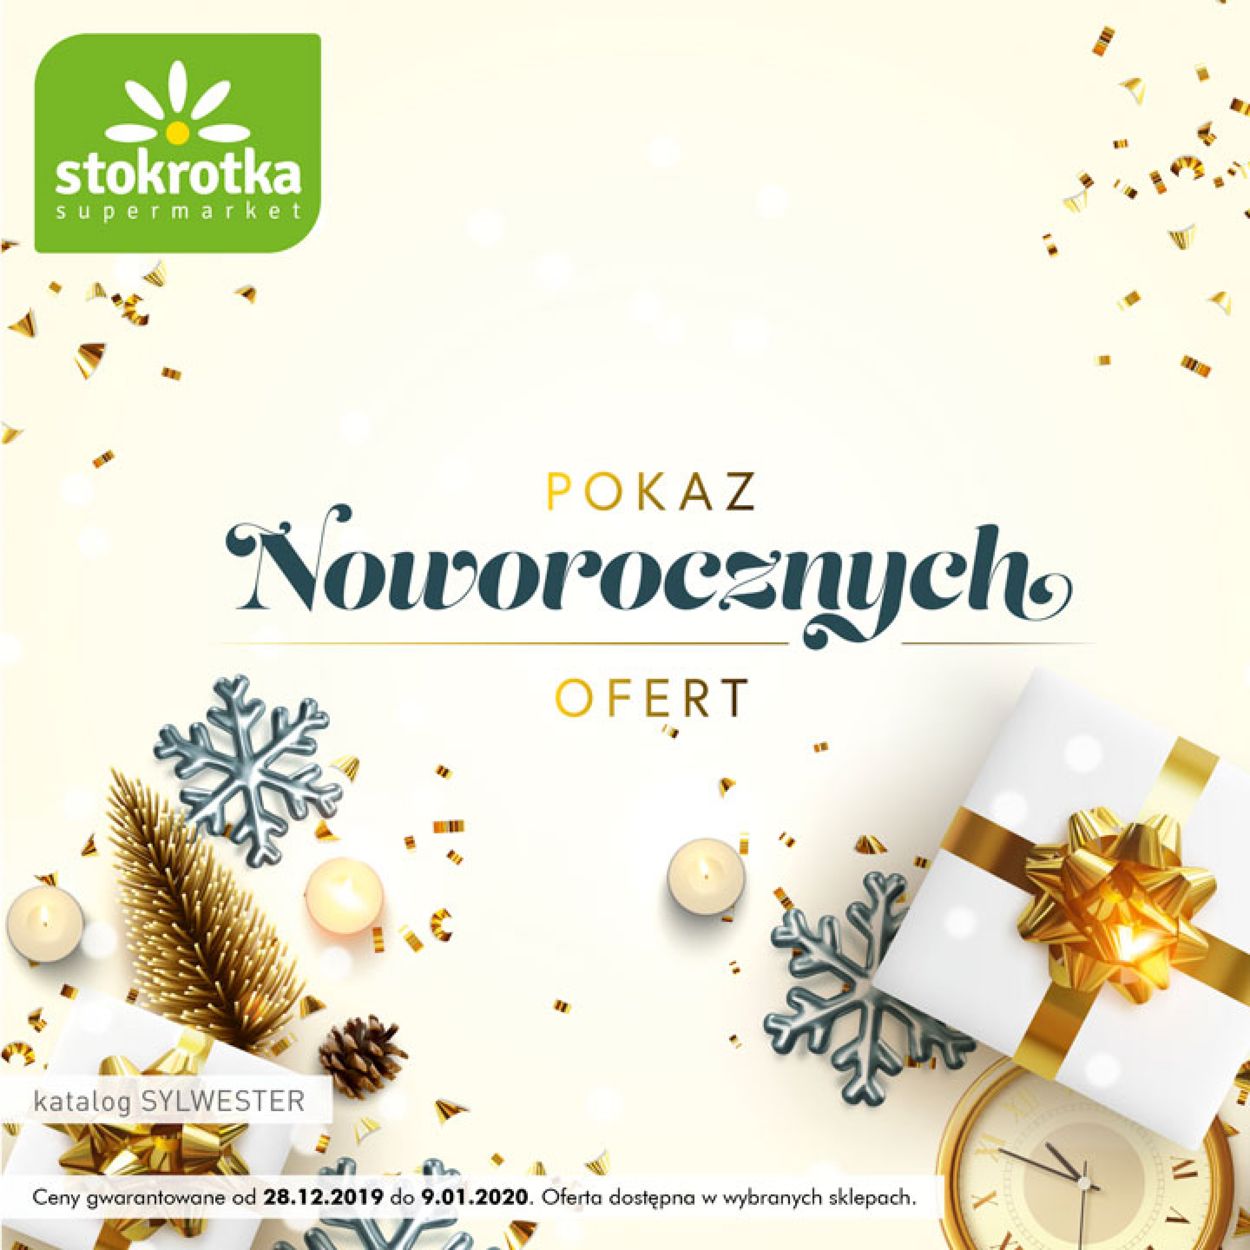 Gazetka promocyjna Stokrotka - Gazetka Noworoczna 2019/2020 - 28.12-09.01.2020